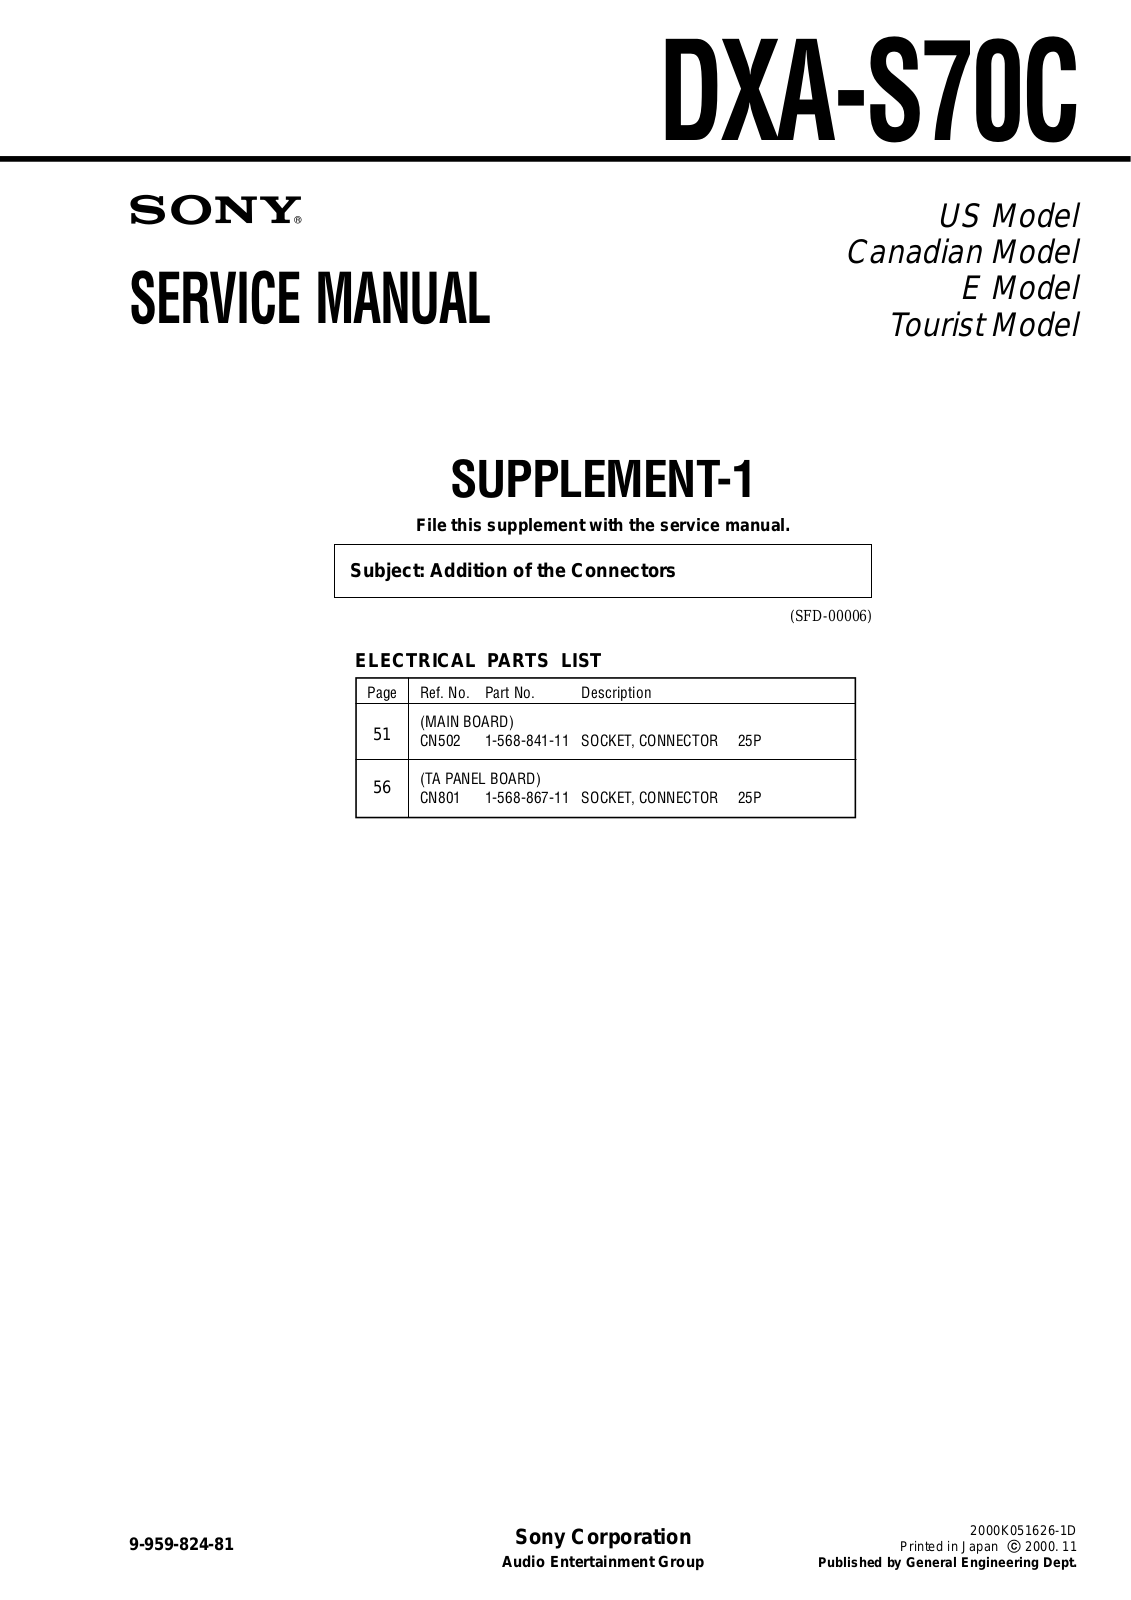 Sony DXA-STOC Service Manual